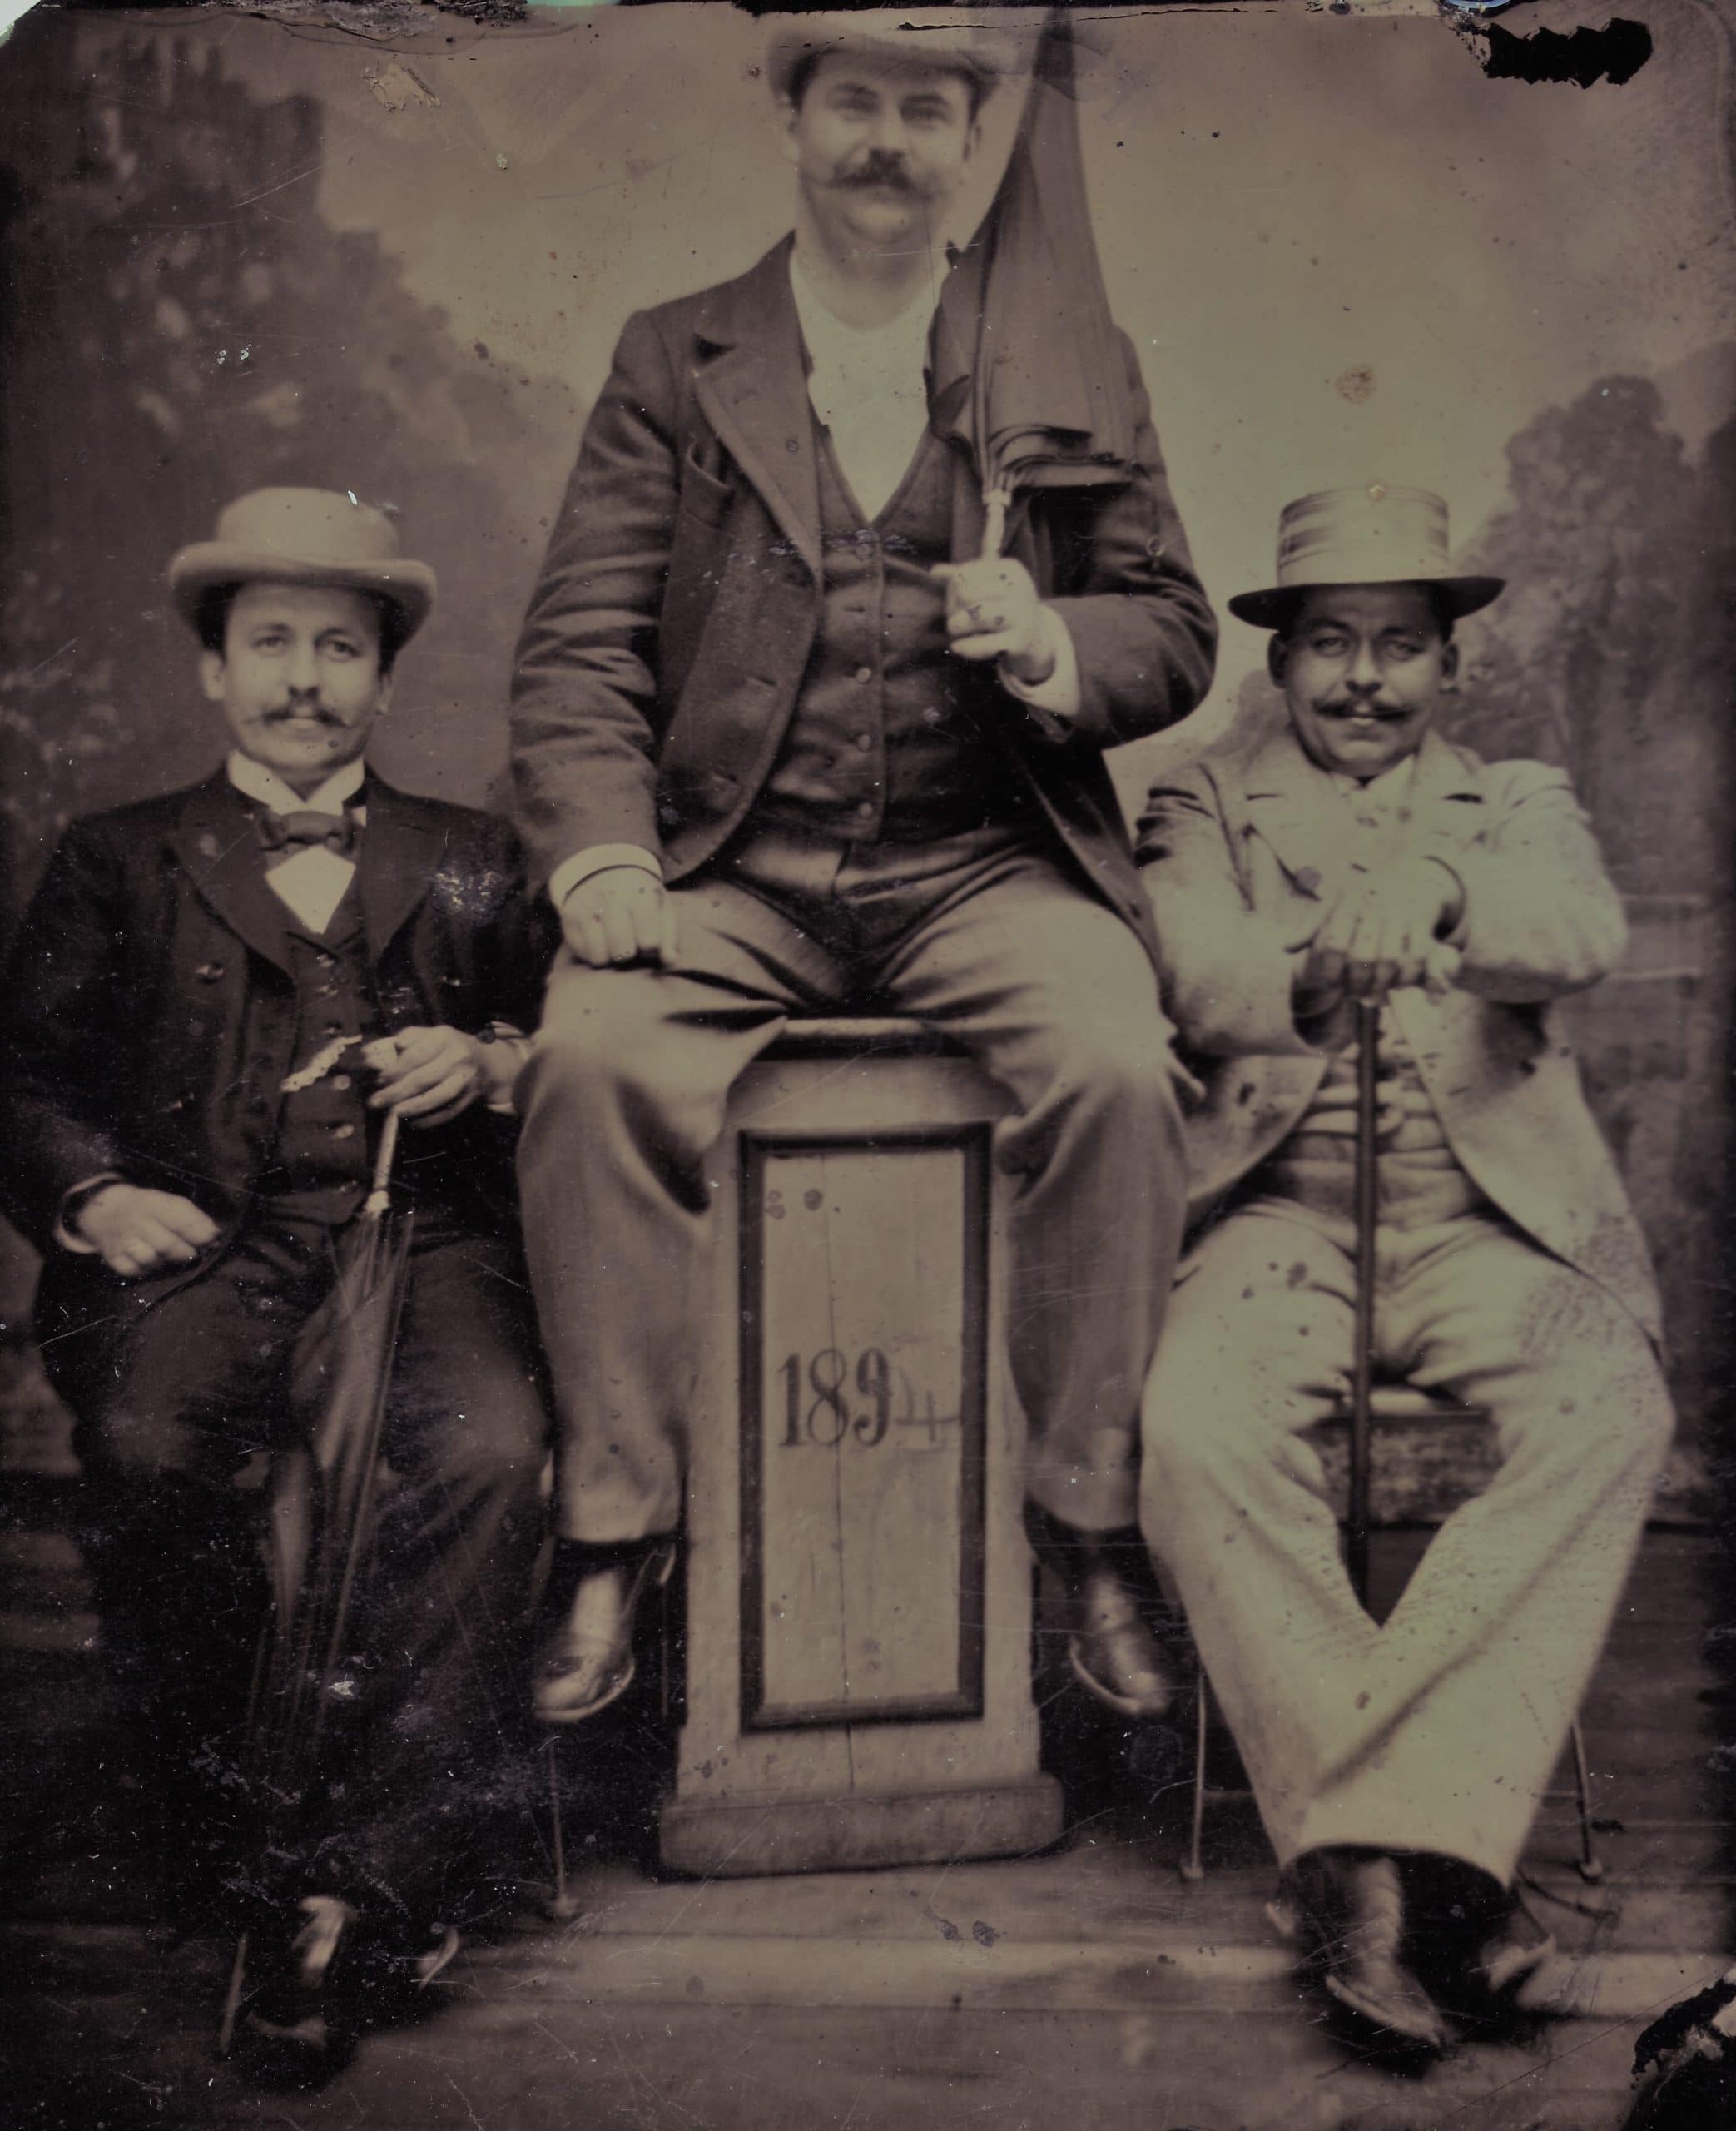 Atelierfoto von Friedrich Ebert und zwei anderen Männern, 1894